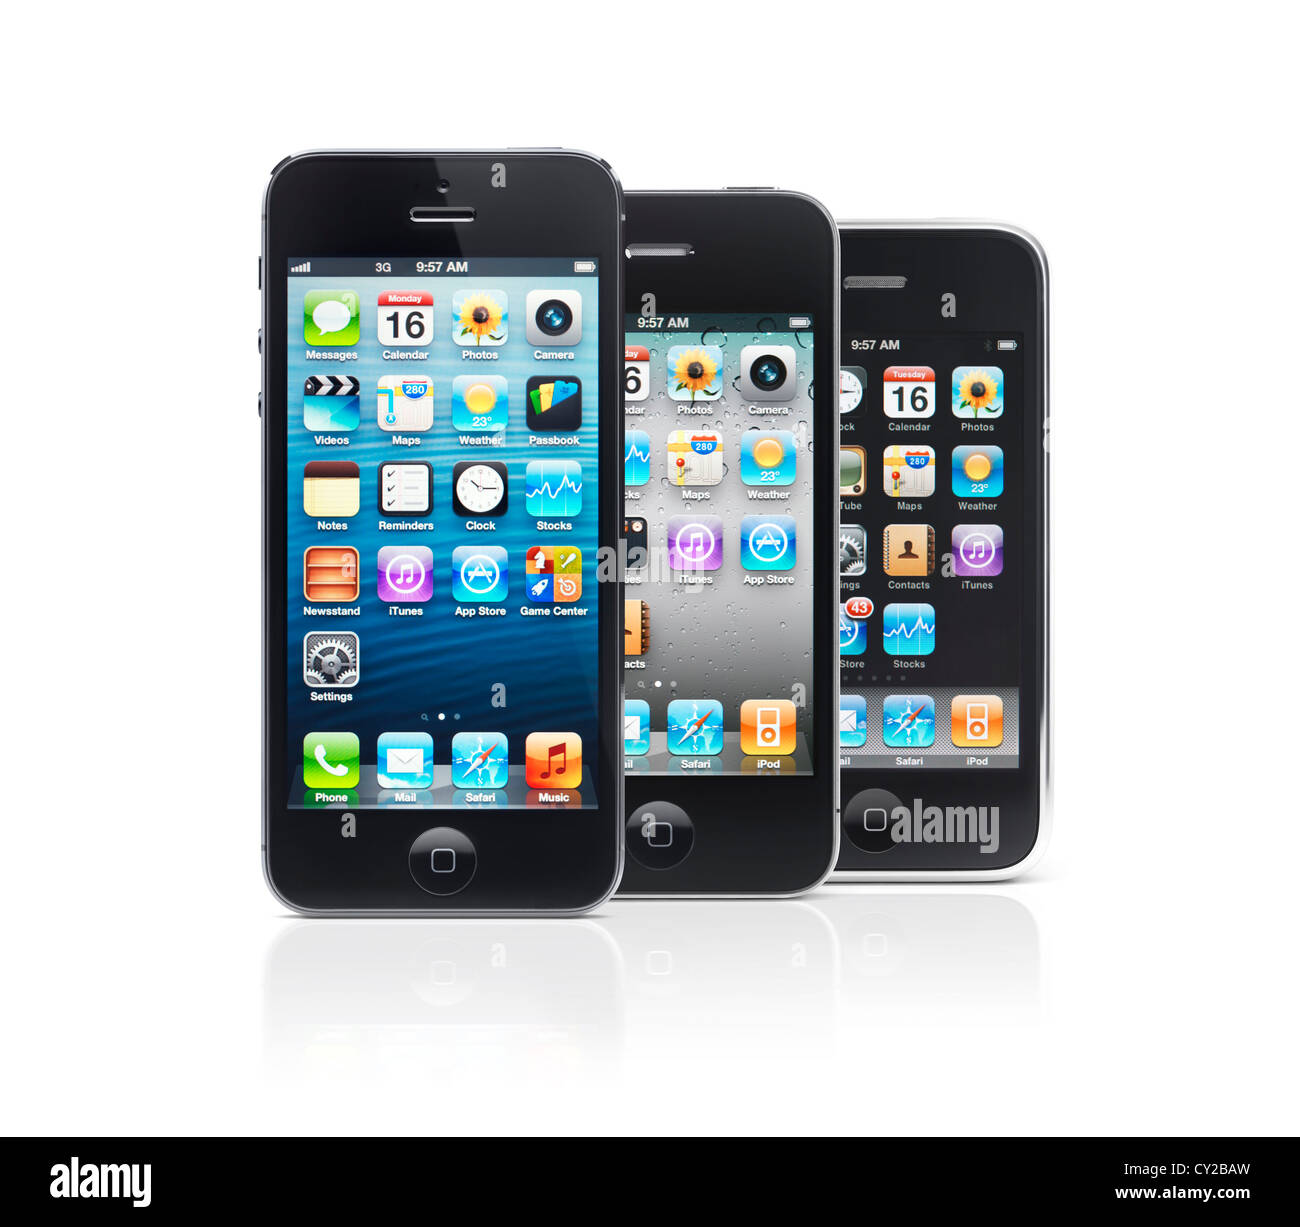 Gli smartphone tre Apple iPhone 5, iPhone 4 e iPhone 3 isolati su sfondo bianco Foto Stock